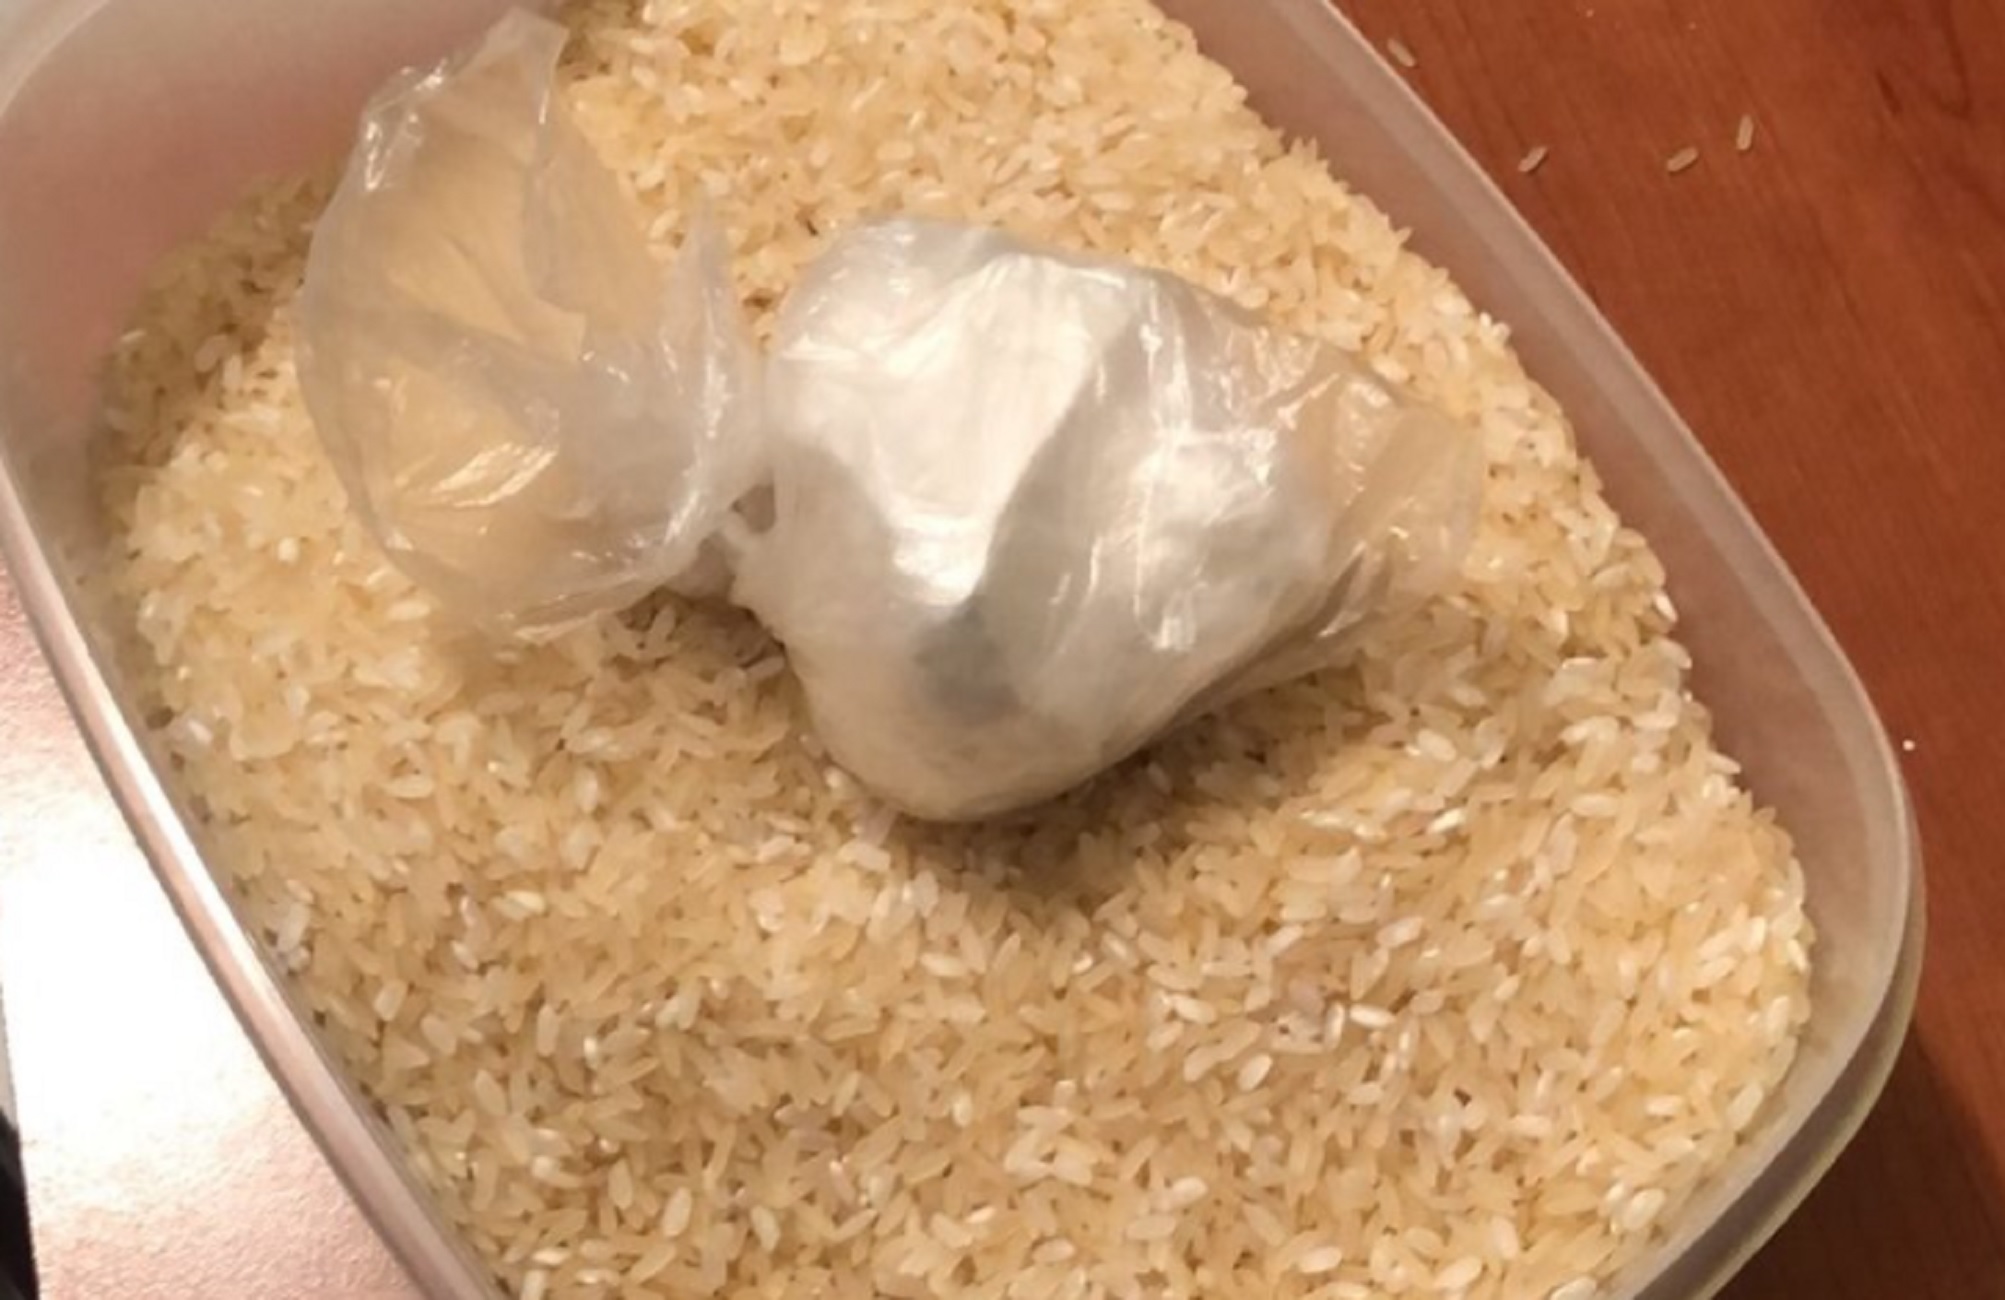 Πάτρα: Το πλαστικό μπολ με το ρύζι άρχισε να ξεσκεπάζει τη «μαφία της κοκαϊνης» – Όλα στο φως